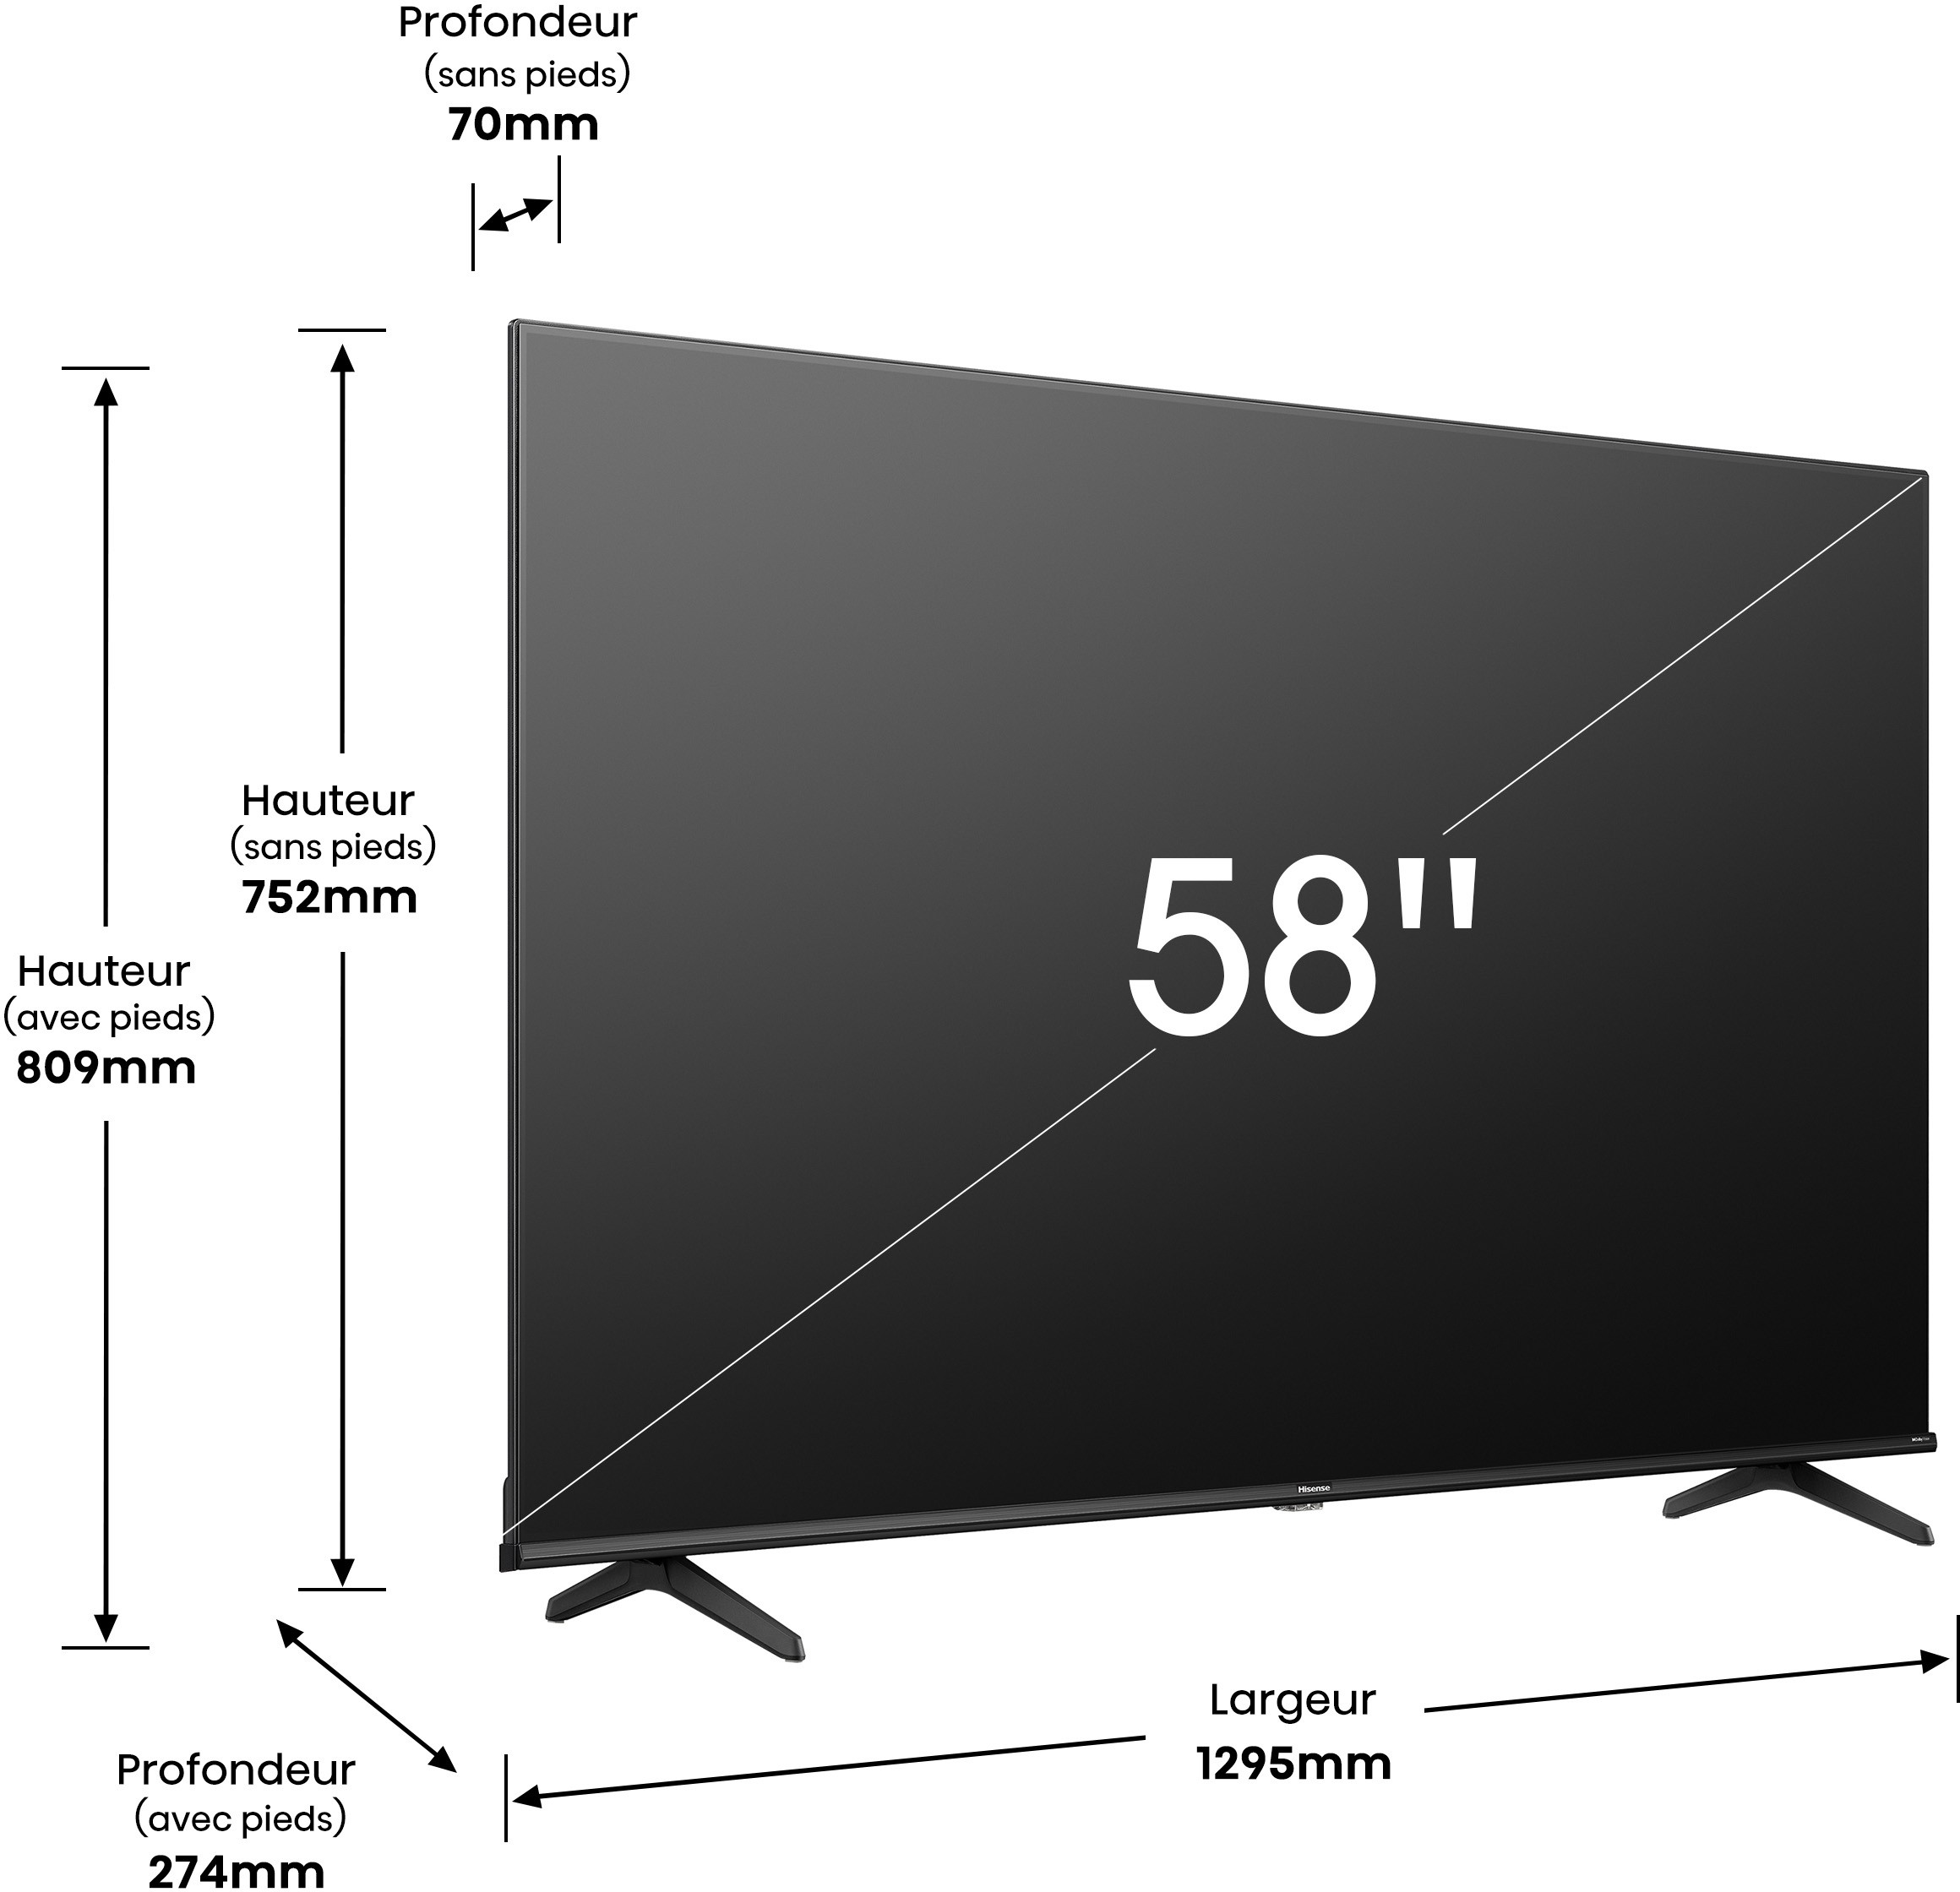 HISENSE TV LED 4K 147 cm  - 58A6K